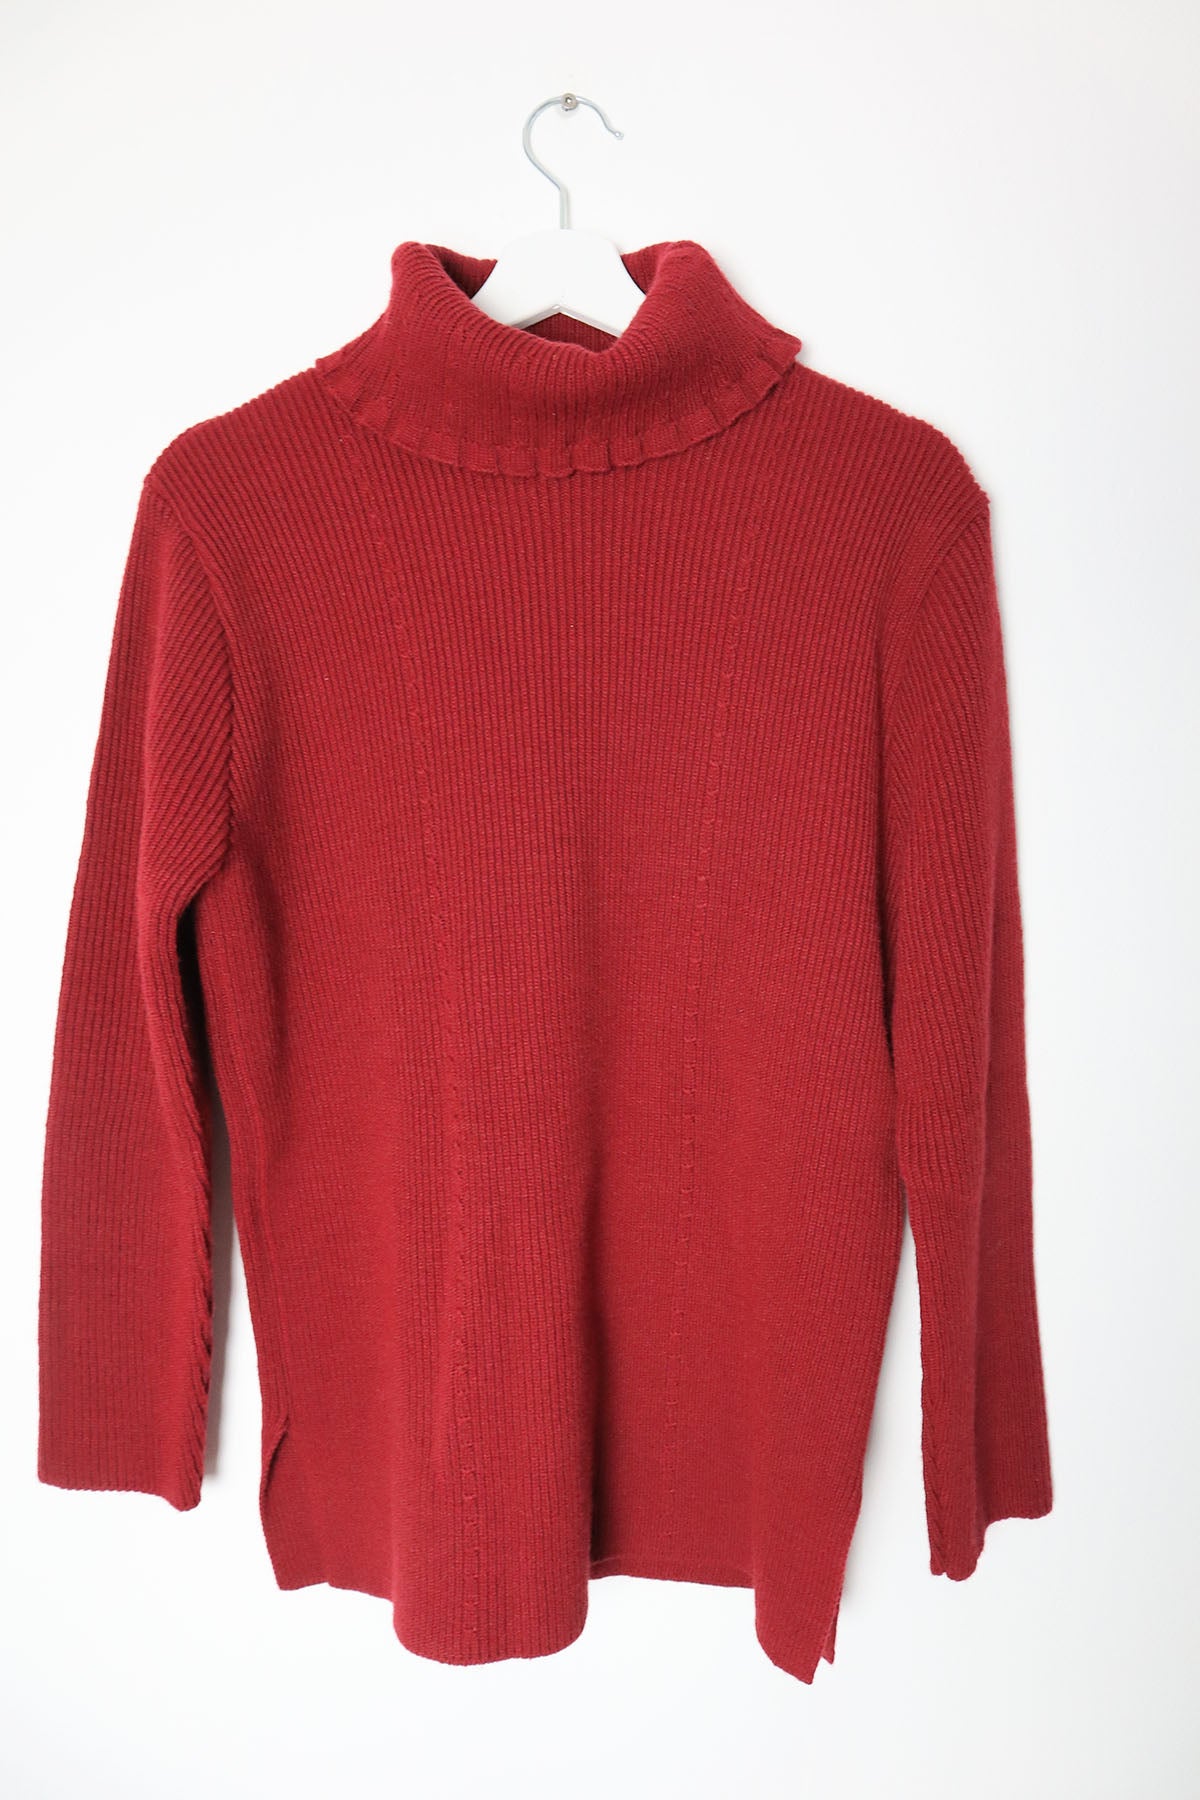 Vintage Turtleneck Knit Pullover